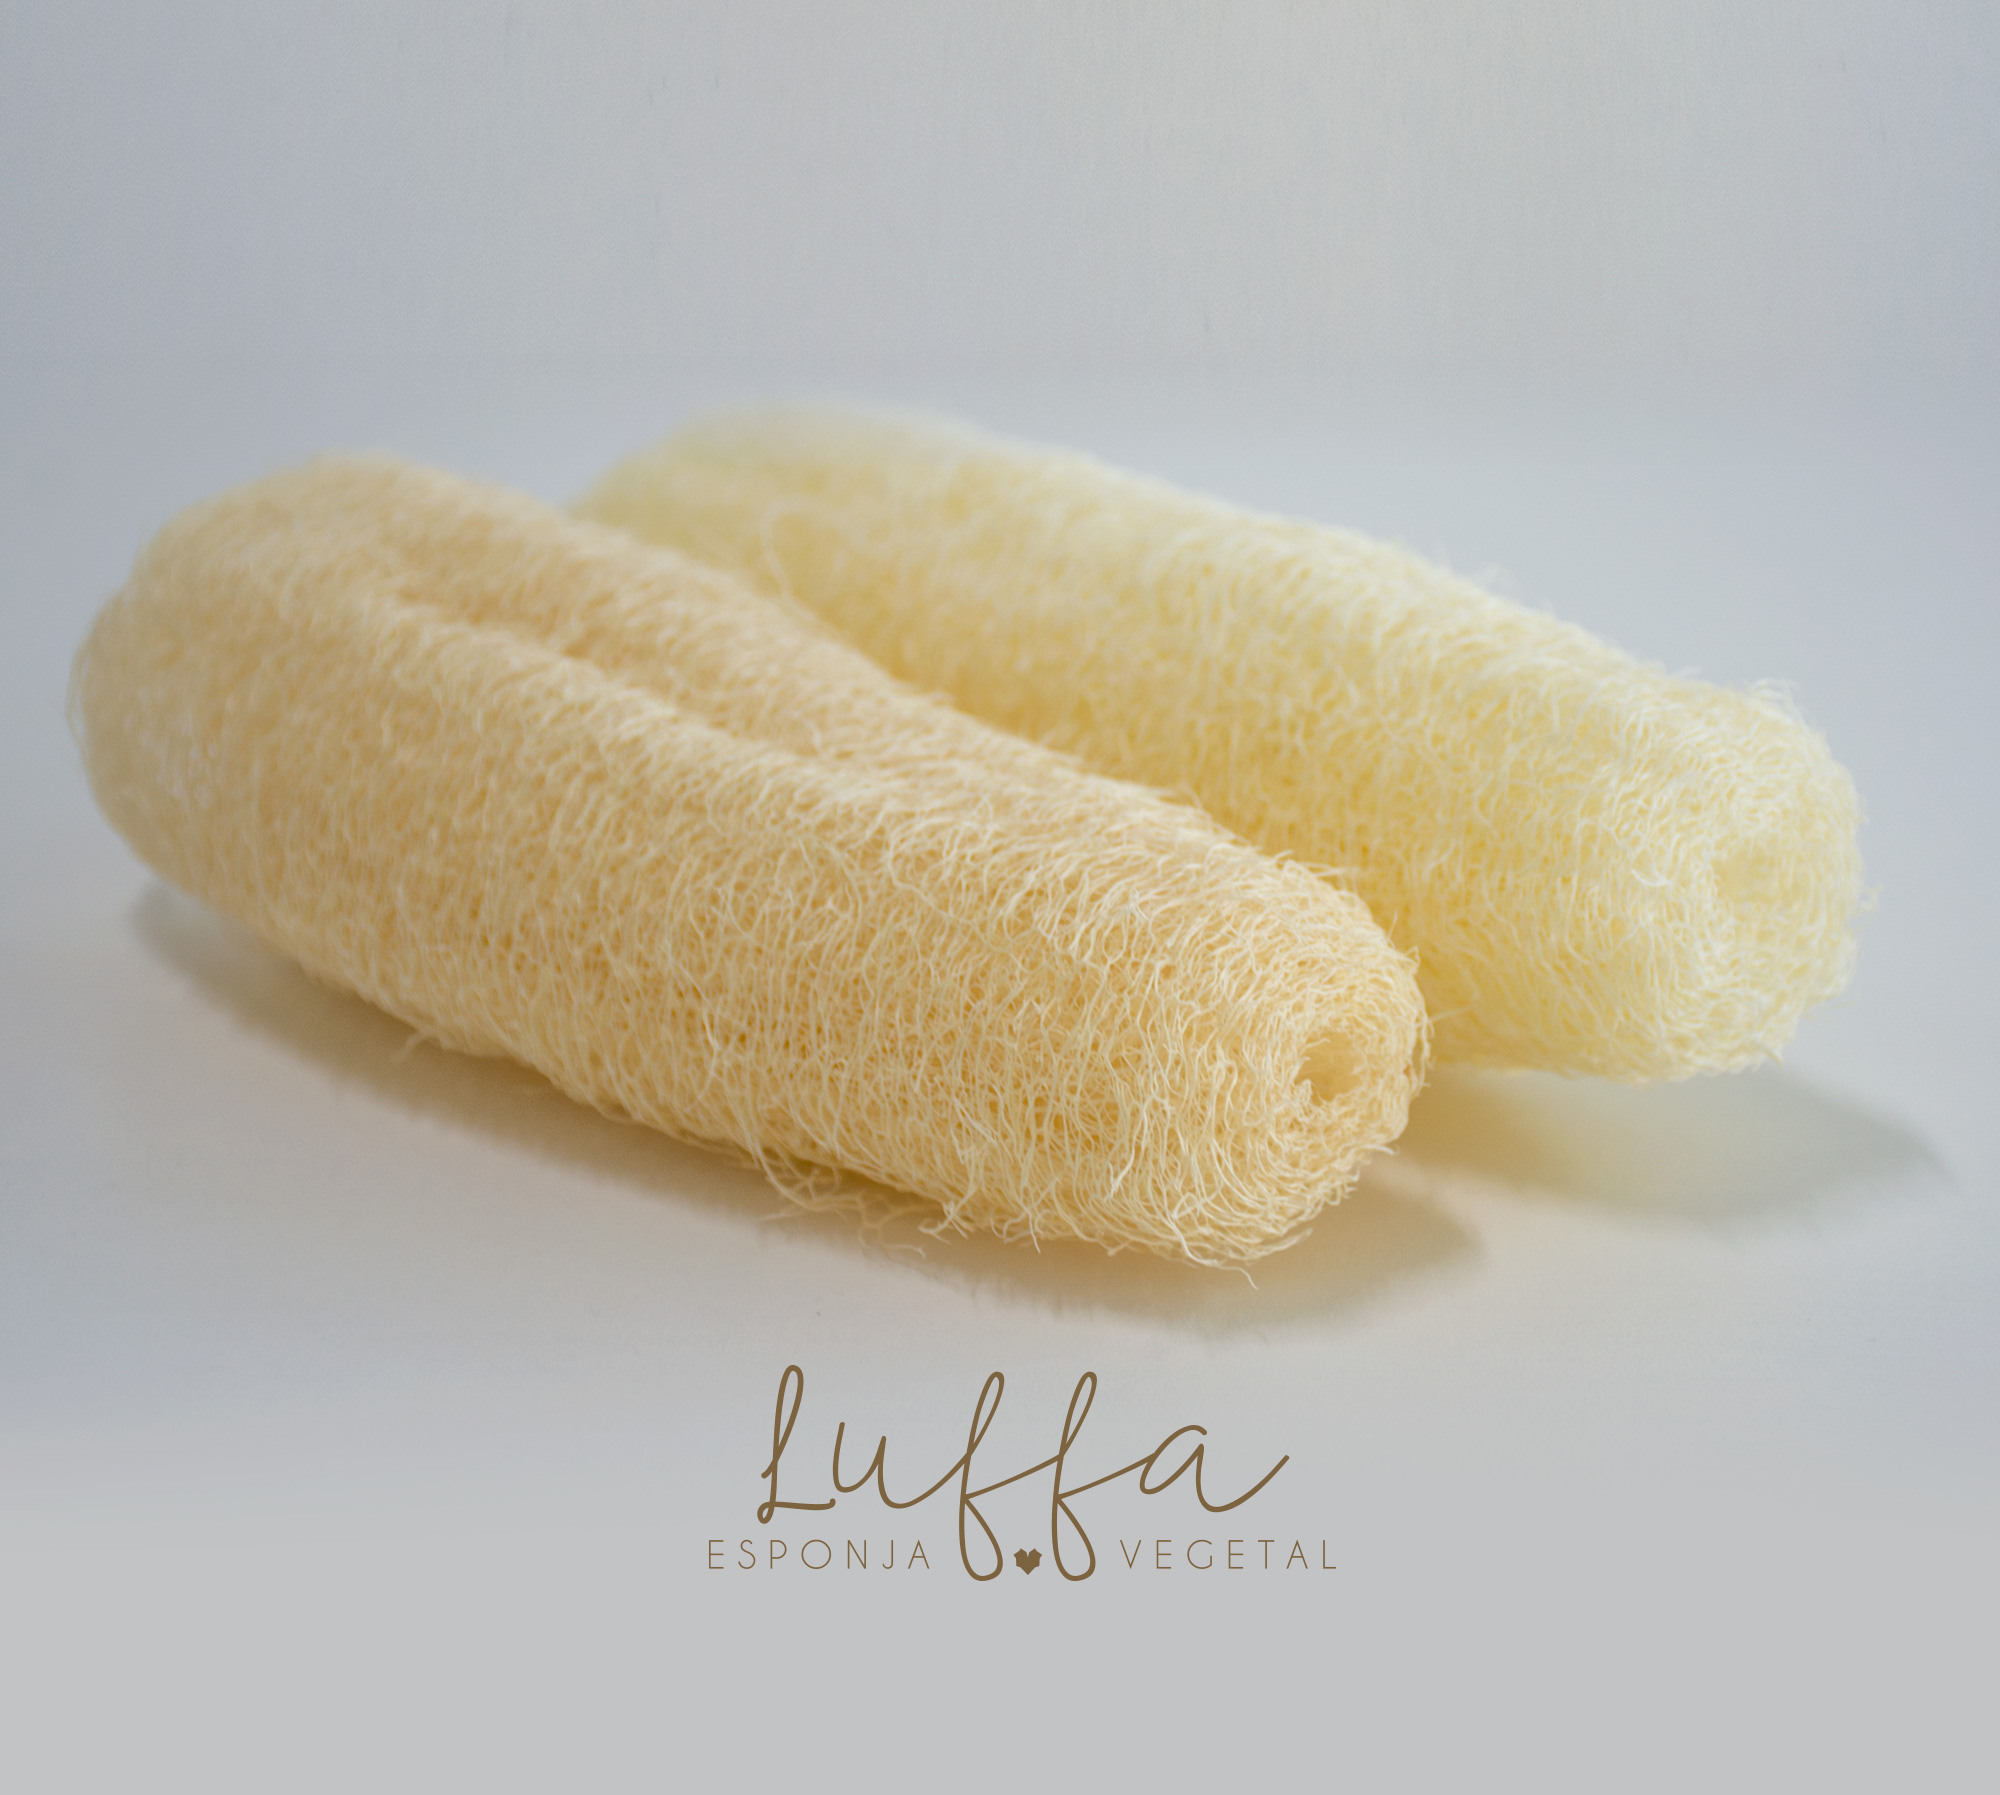 Esponja entera para baño luffa - Esponja o estropajo de baño natural luffa